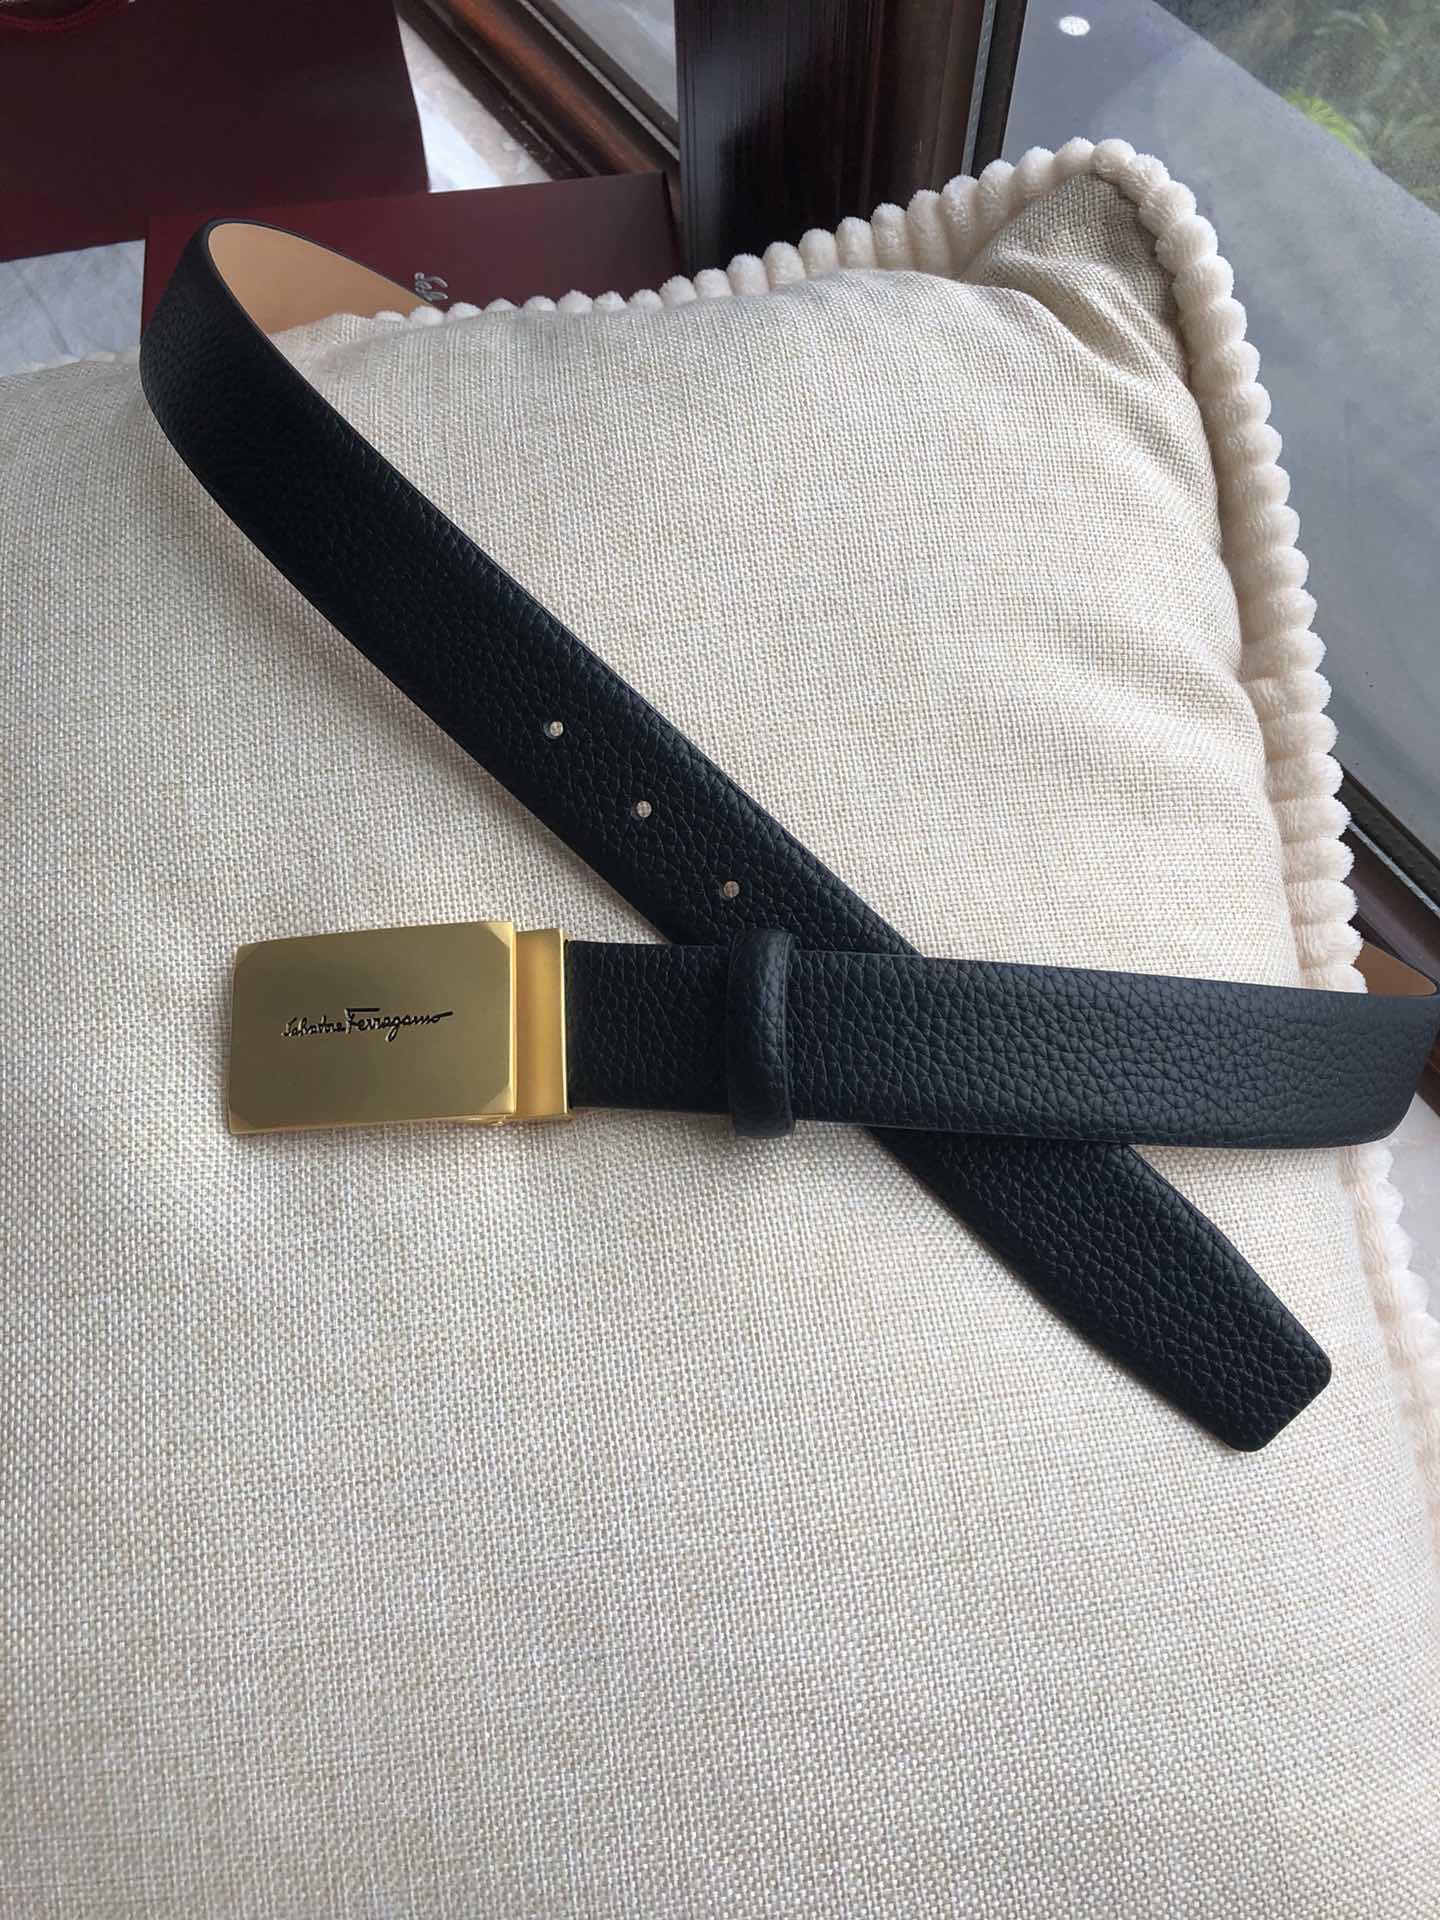 Salvatore Ferragamo Gold buckle belt ASS02268